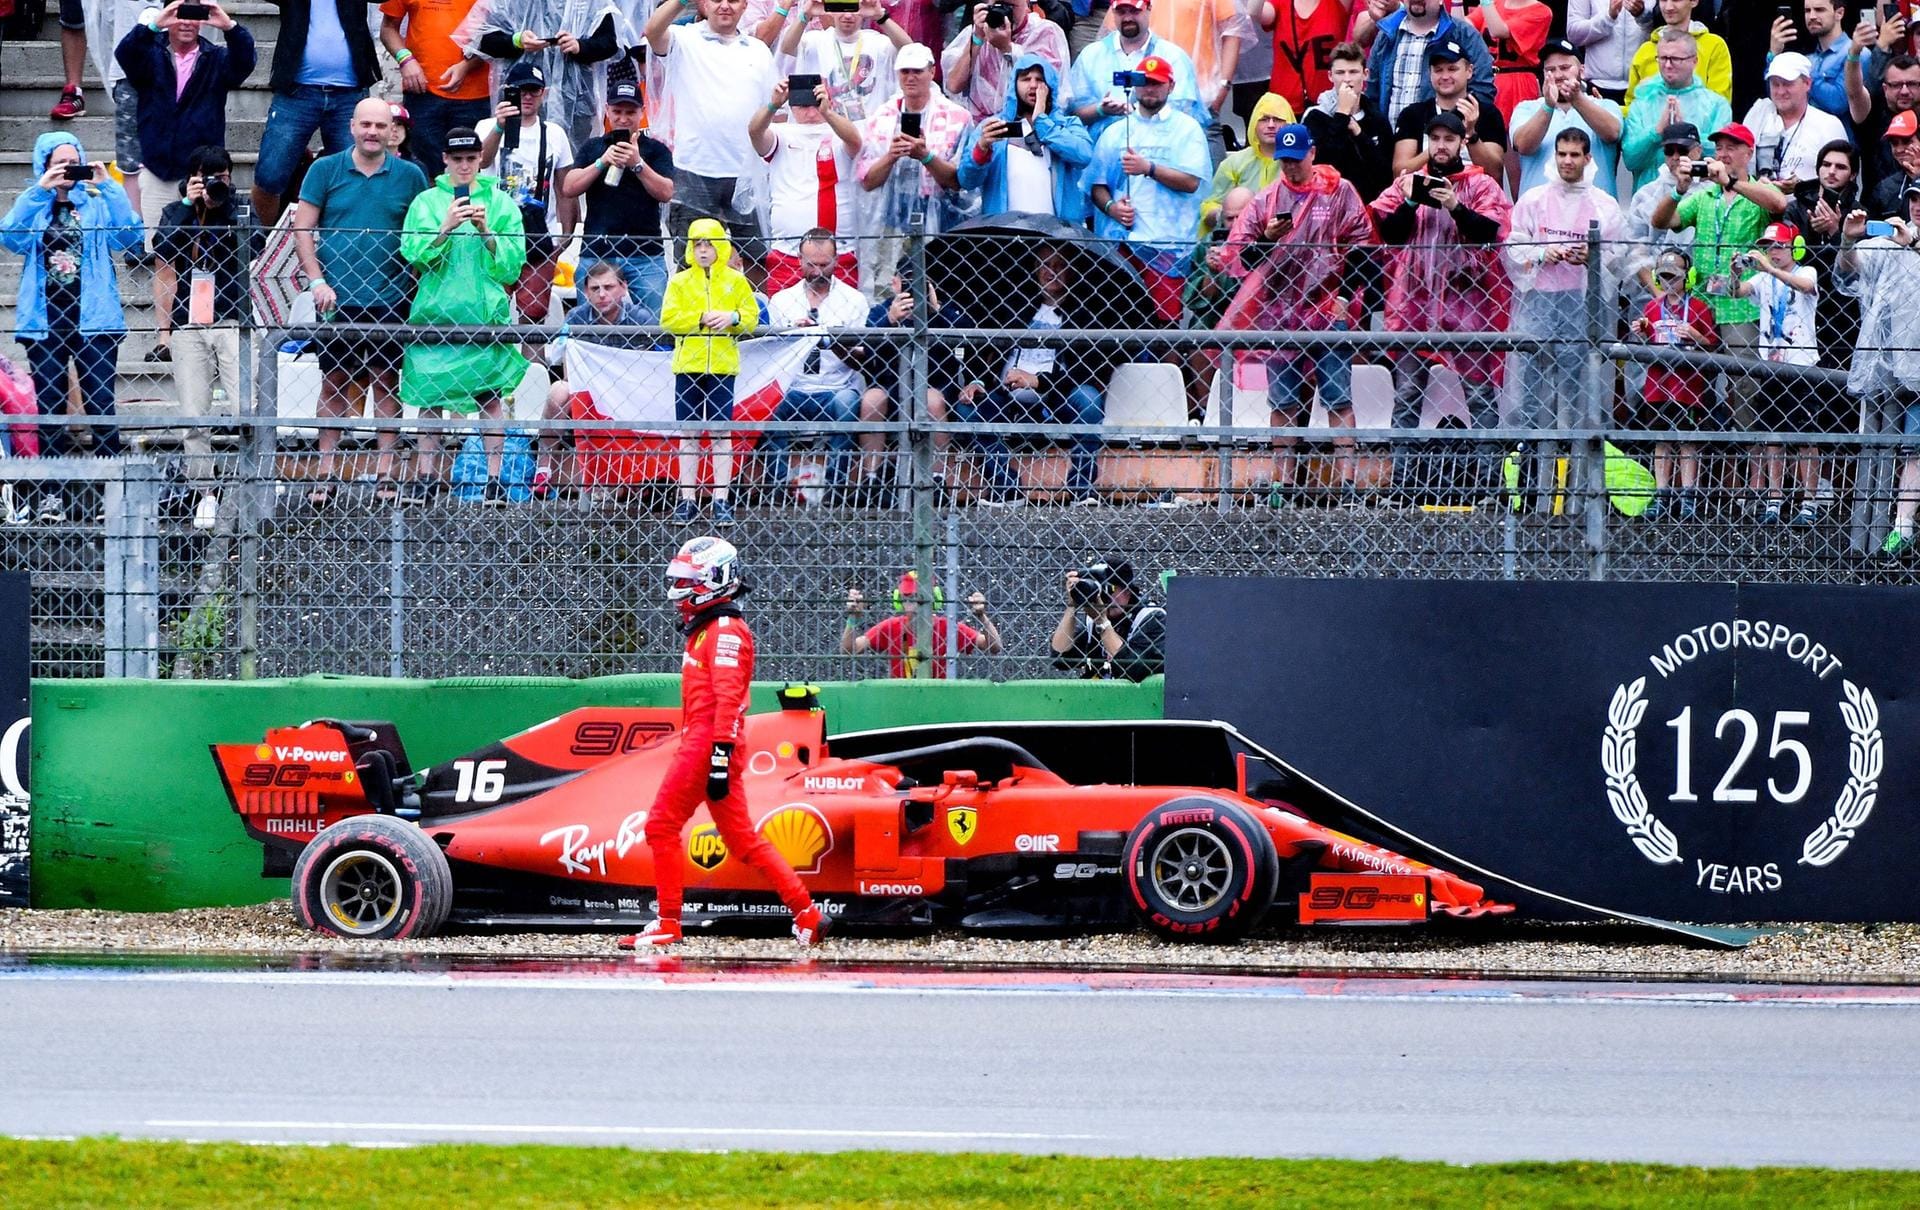 Charles Leclerc liegt in seinem Ferrari auf Podestkurs, bis er in der Opel-Kurve die Kontrolle verliert und mit hohem Tempo in die Bande crasht.